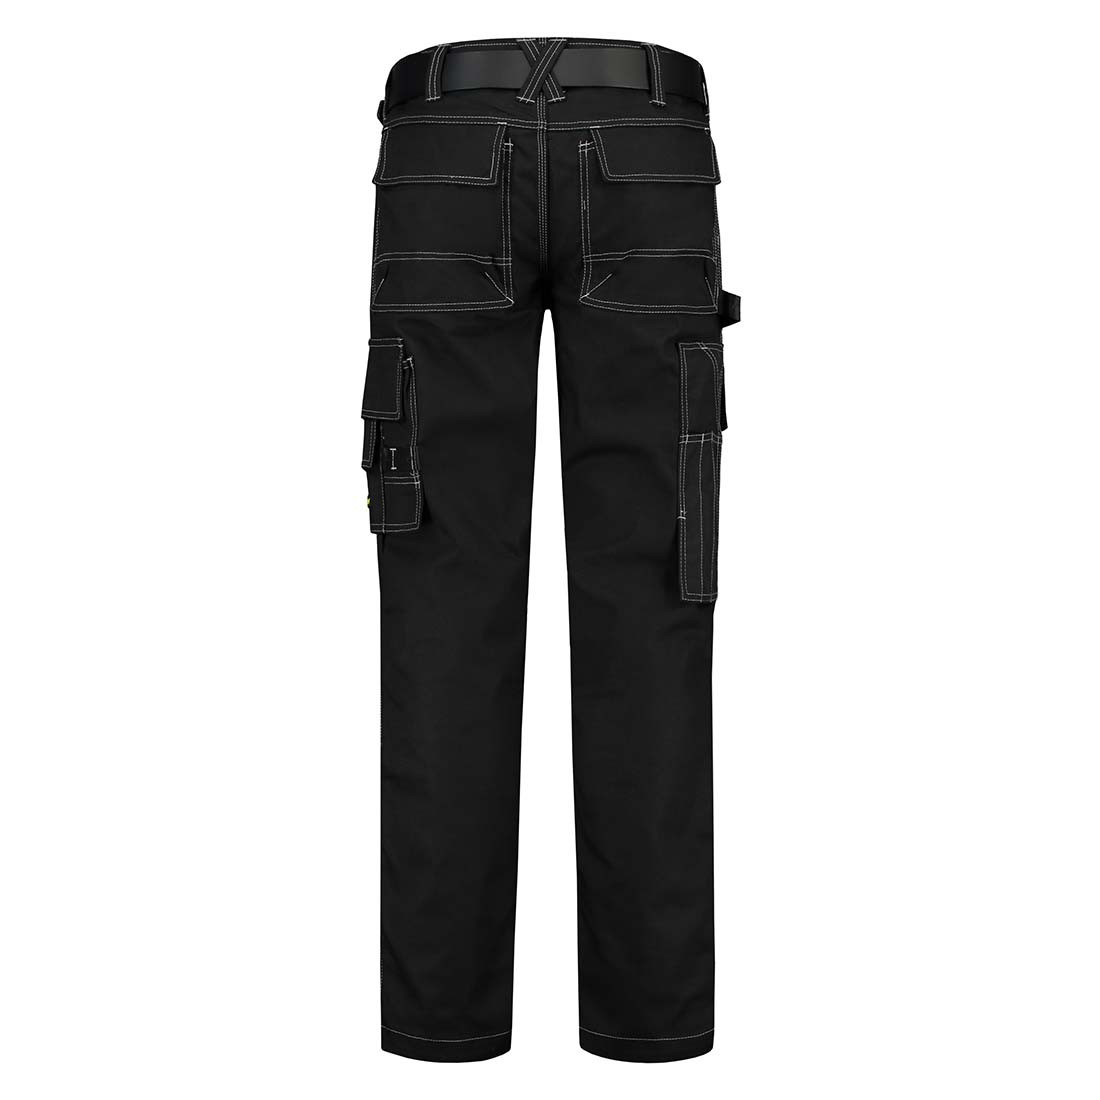 Pantalon de travail unisex CORDURA - Les vêtements de protection